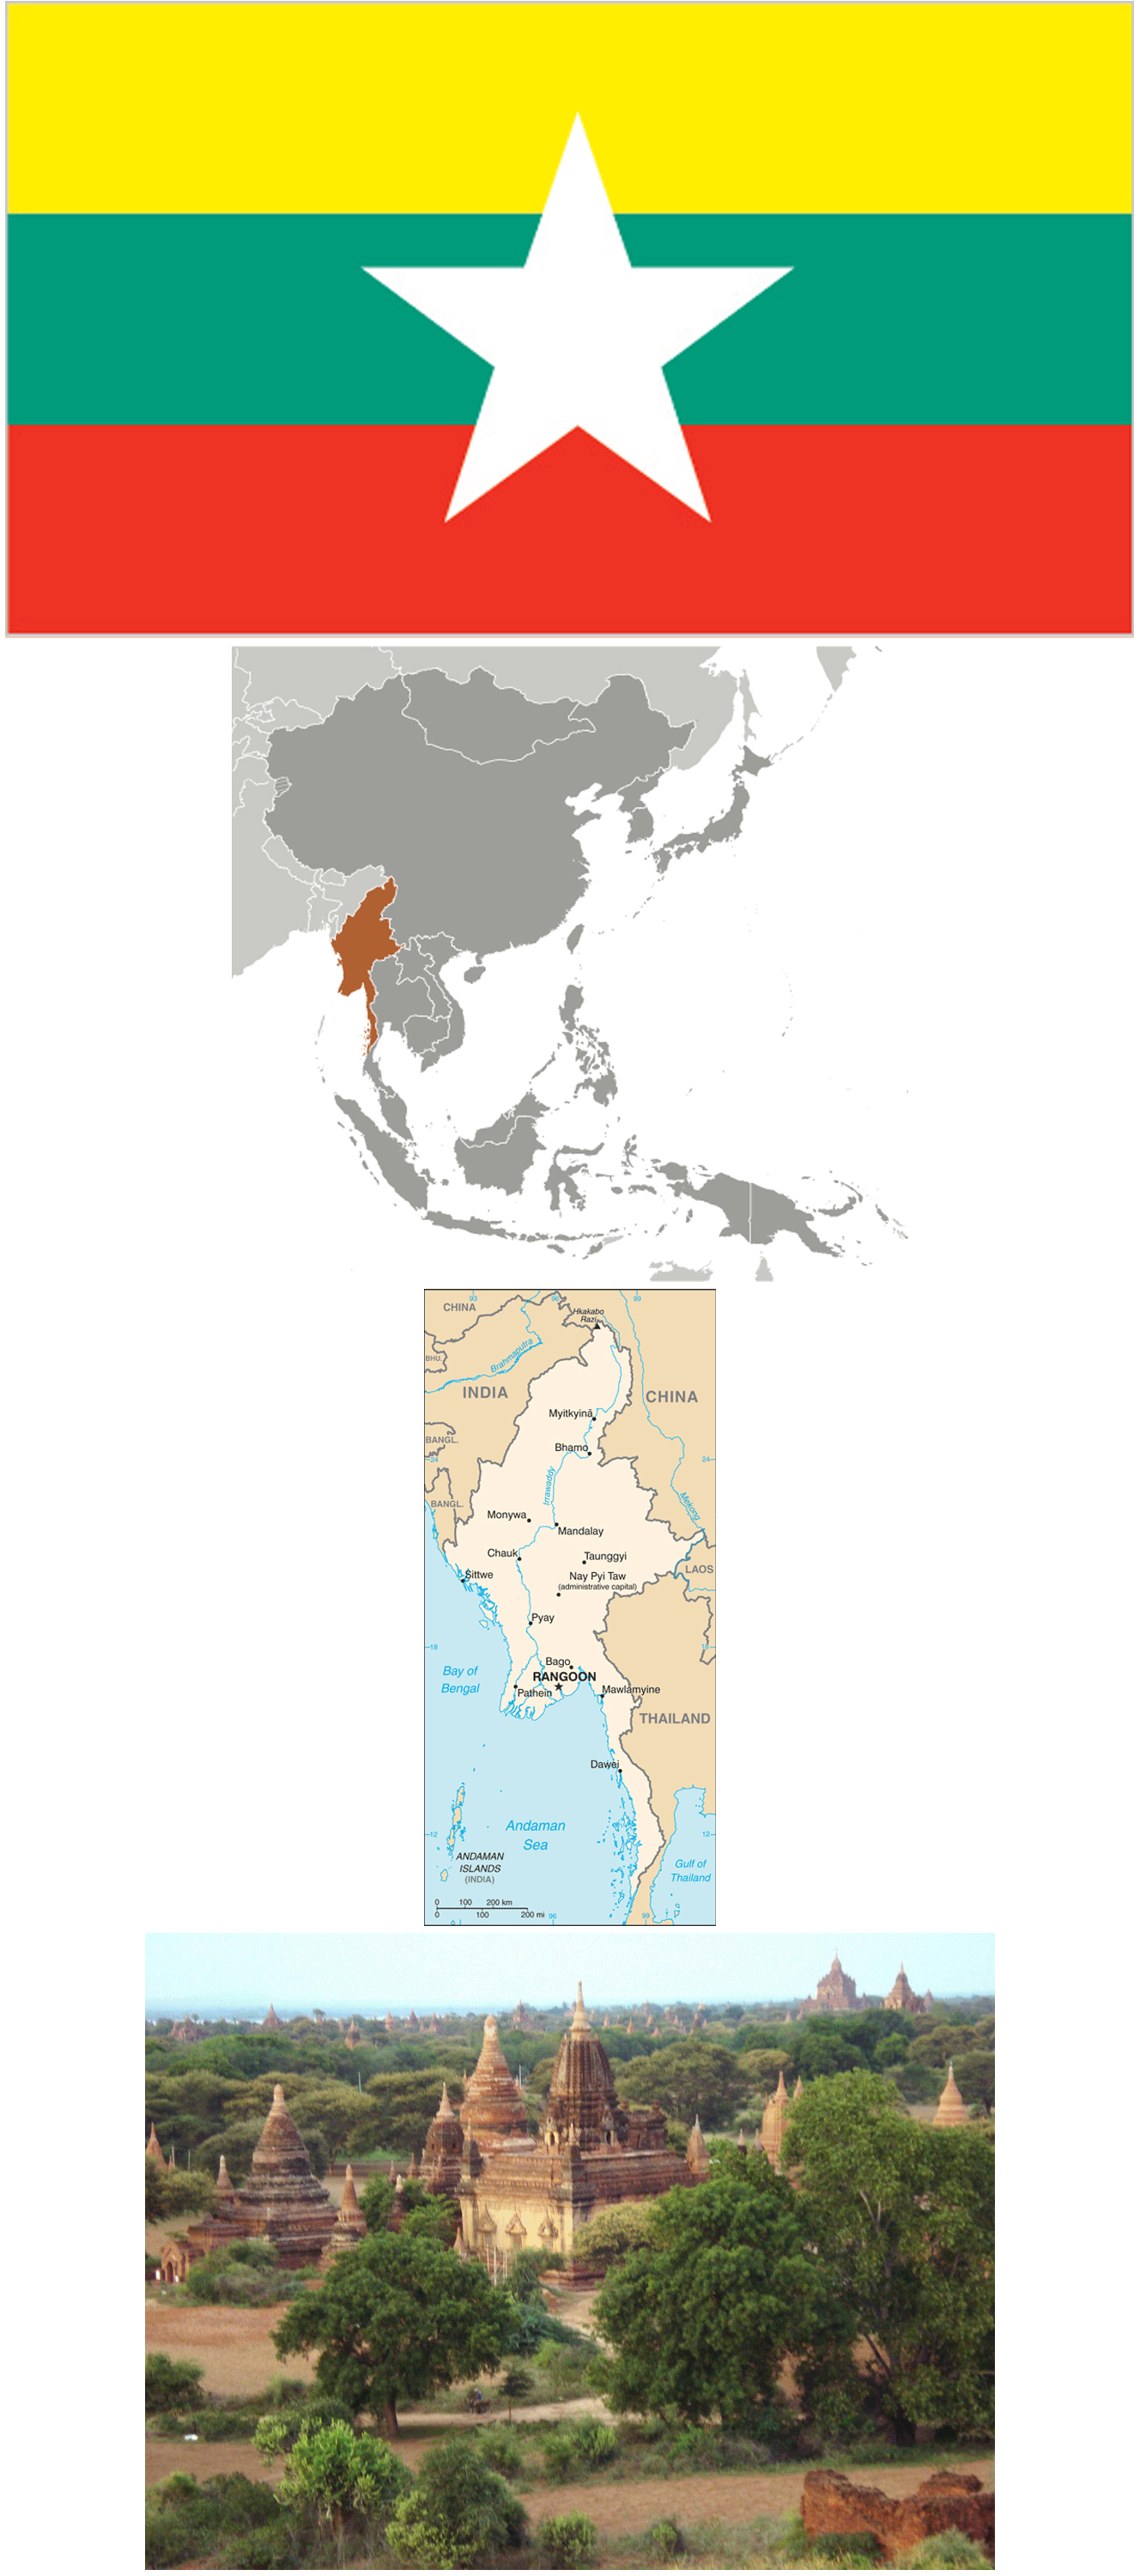 Myanmar [Burma] News